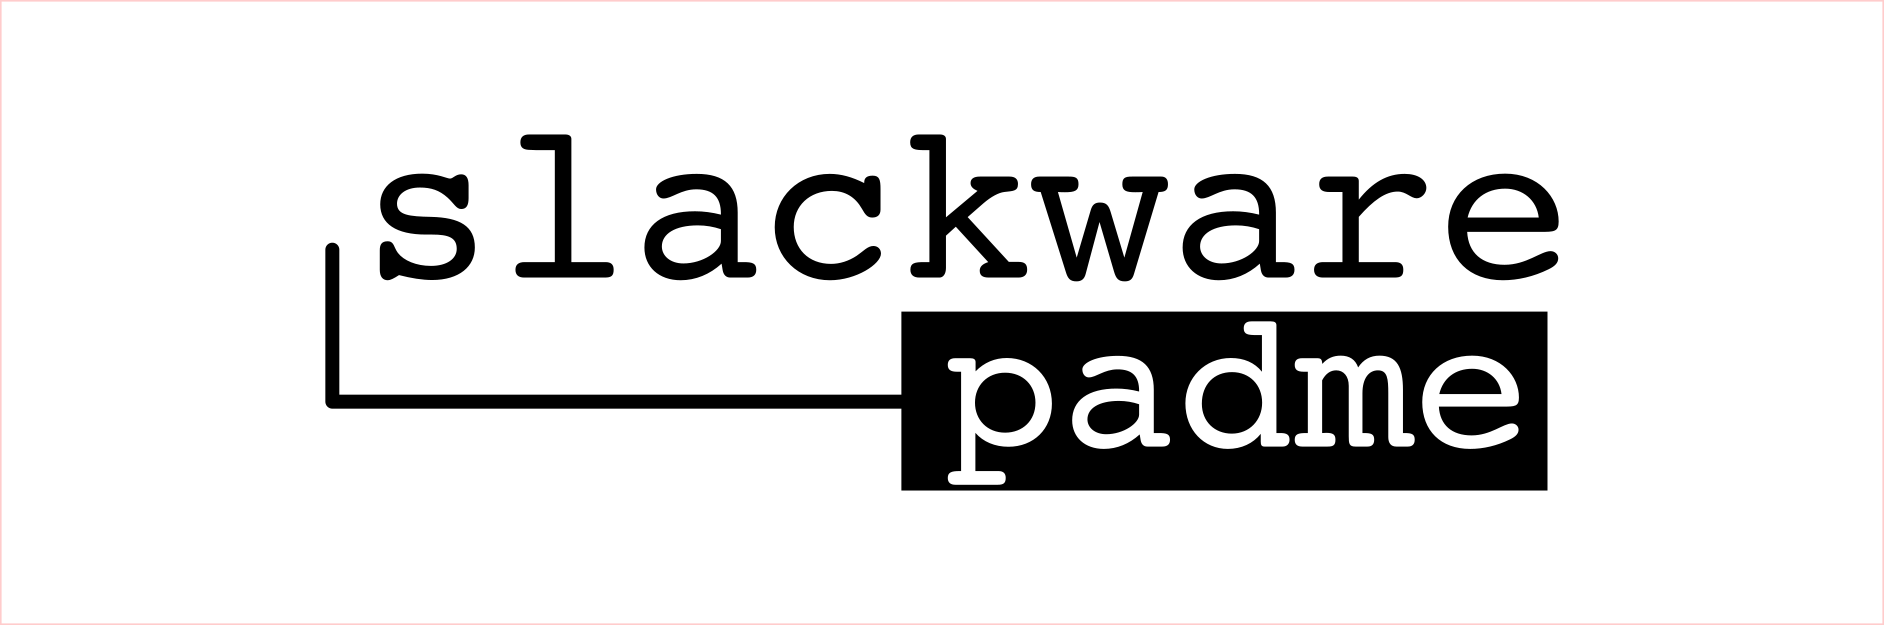 slackware padme logo